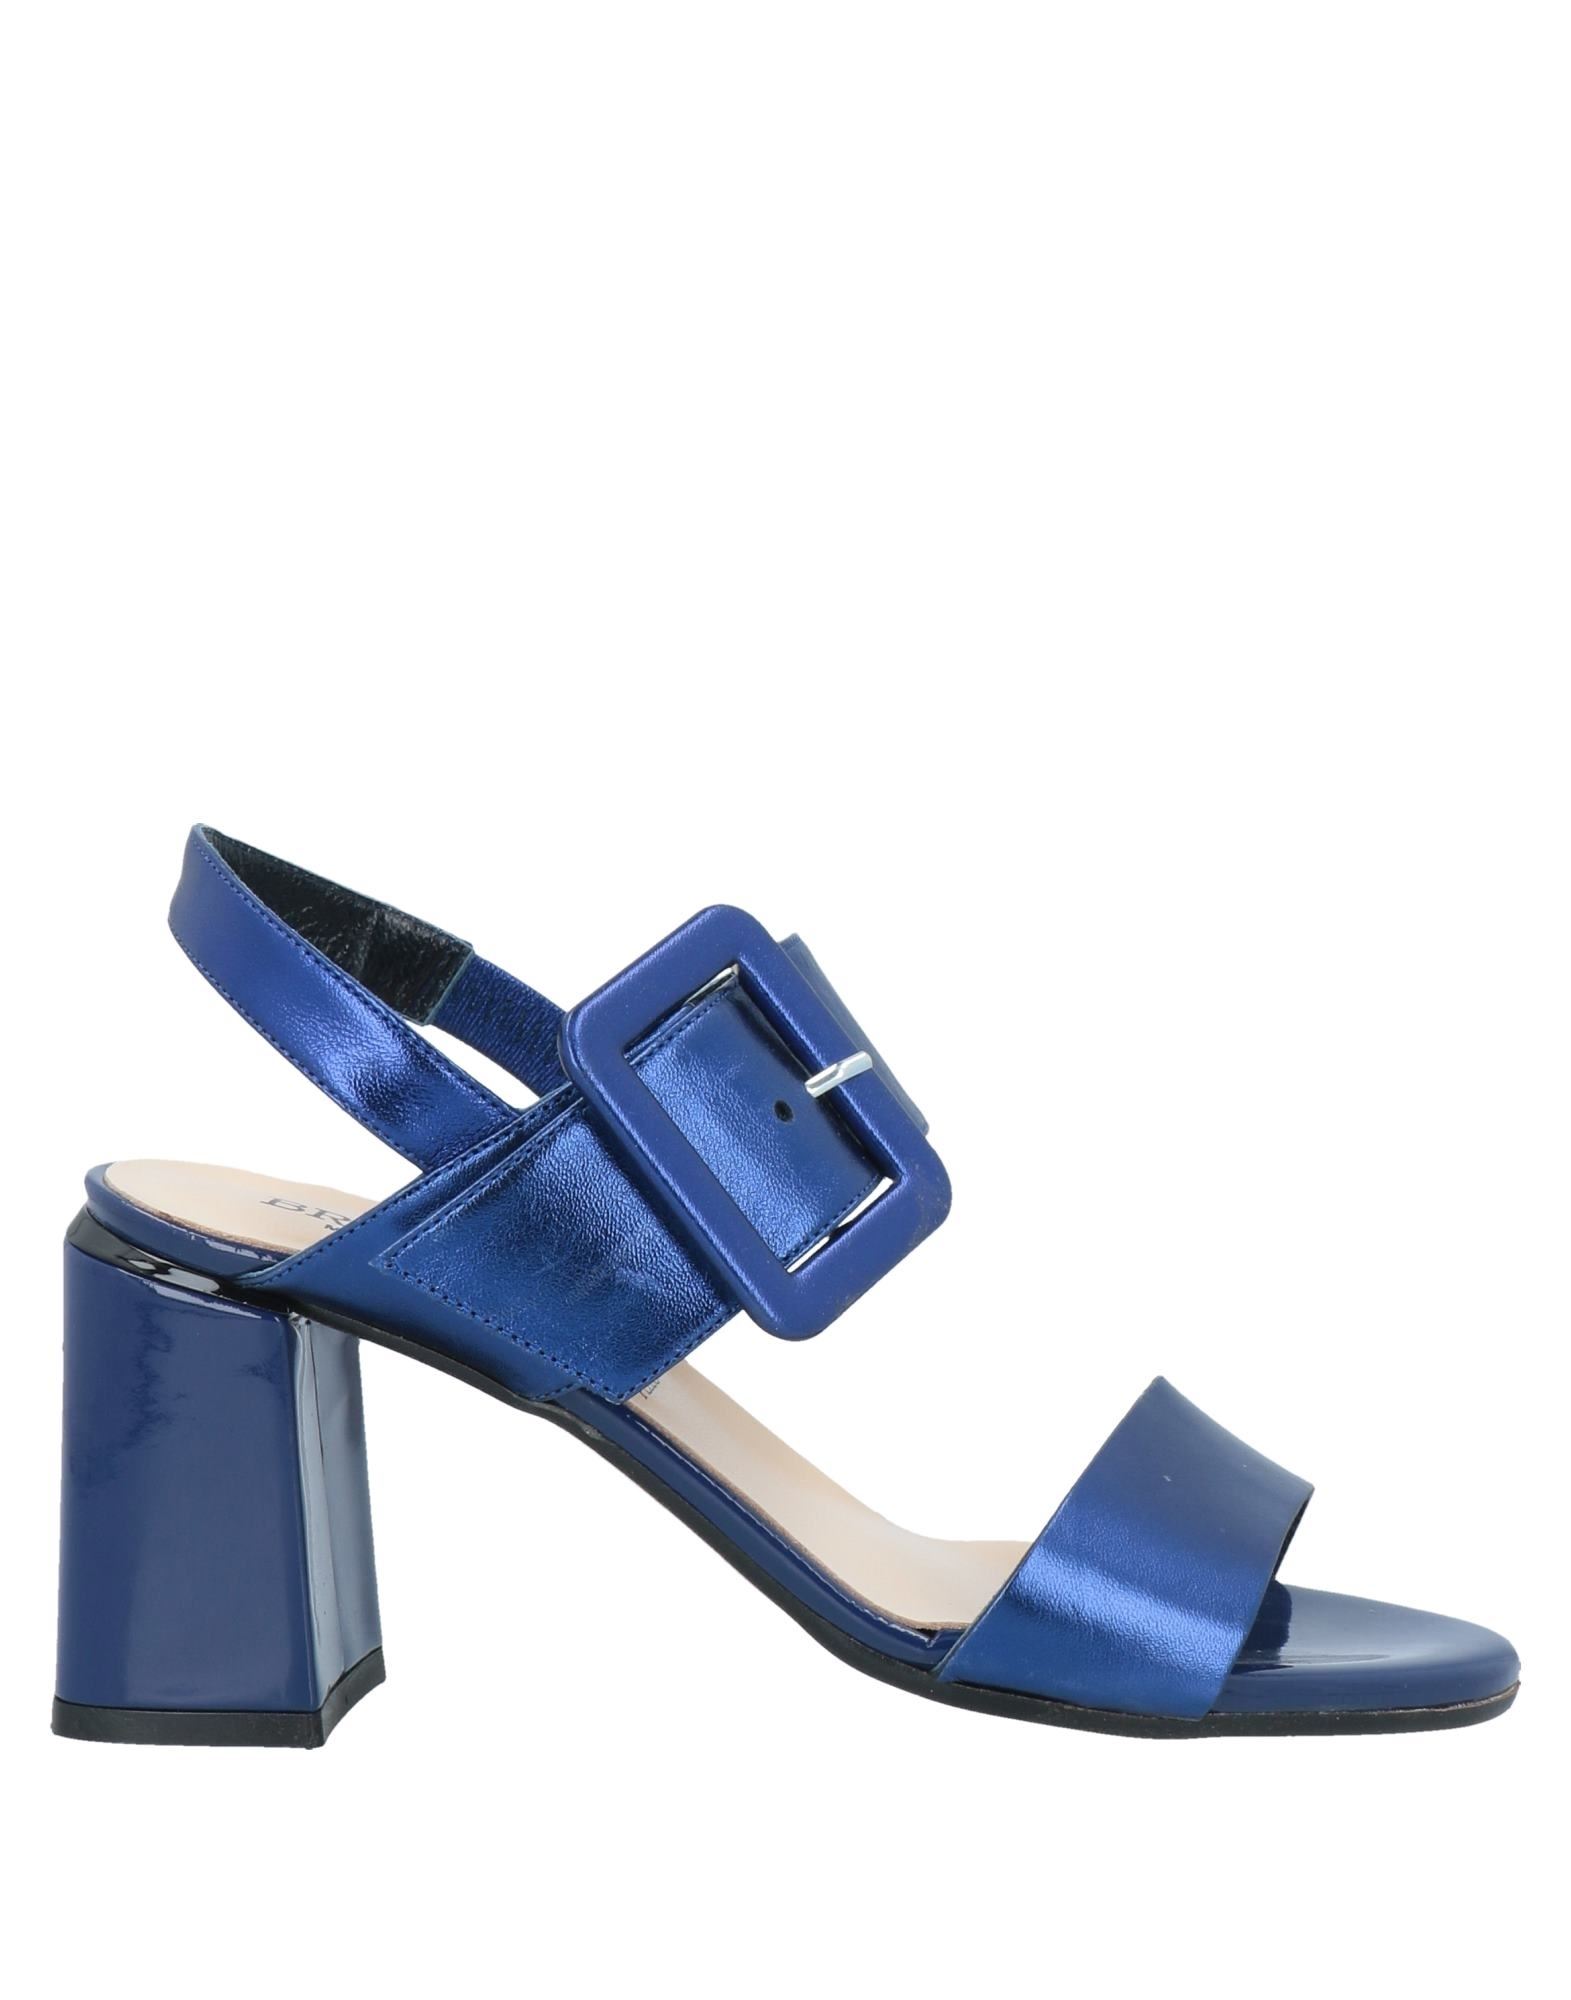 Brawn's Sandals In Blue